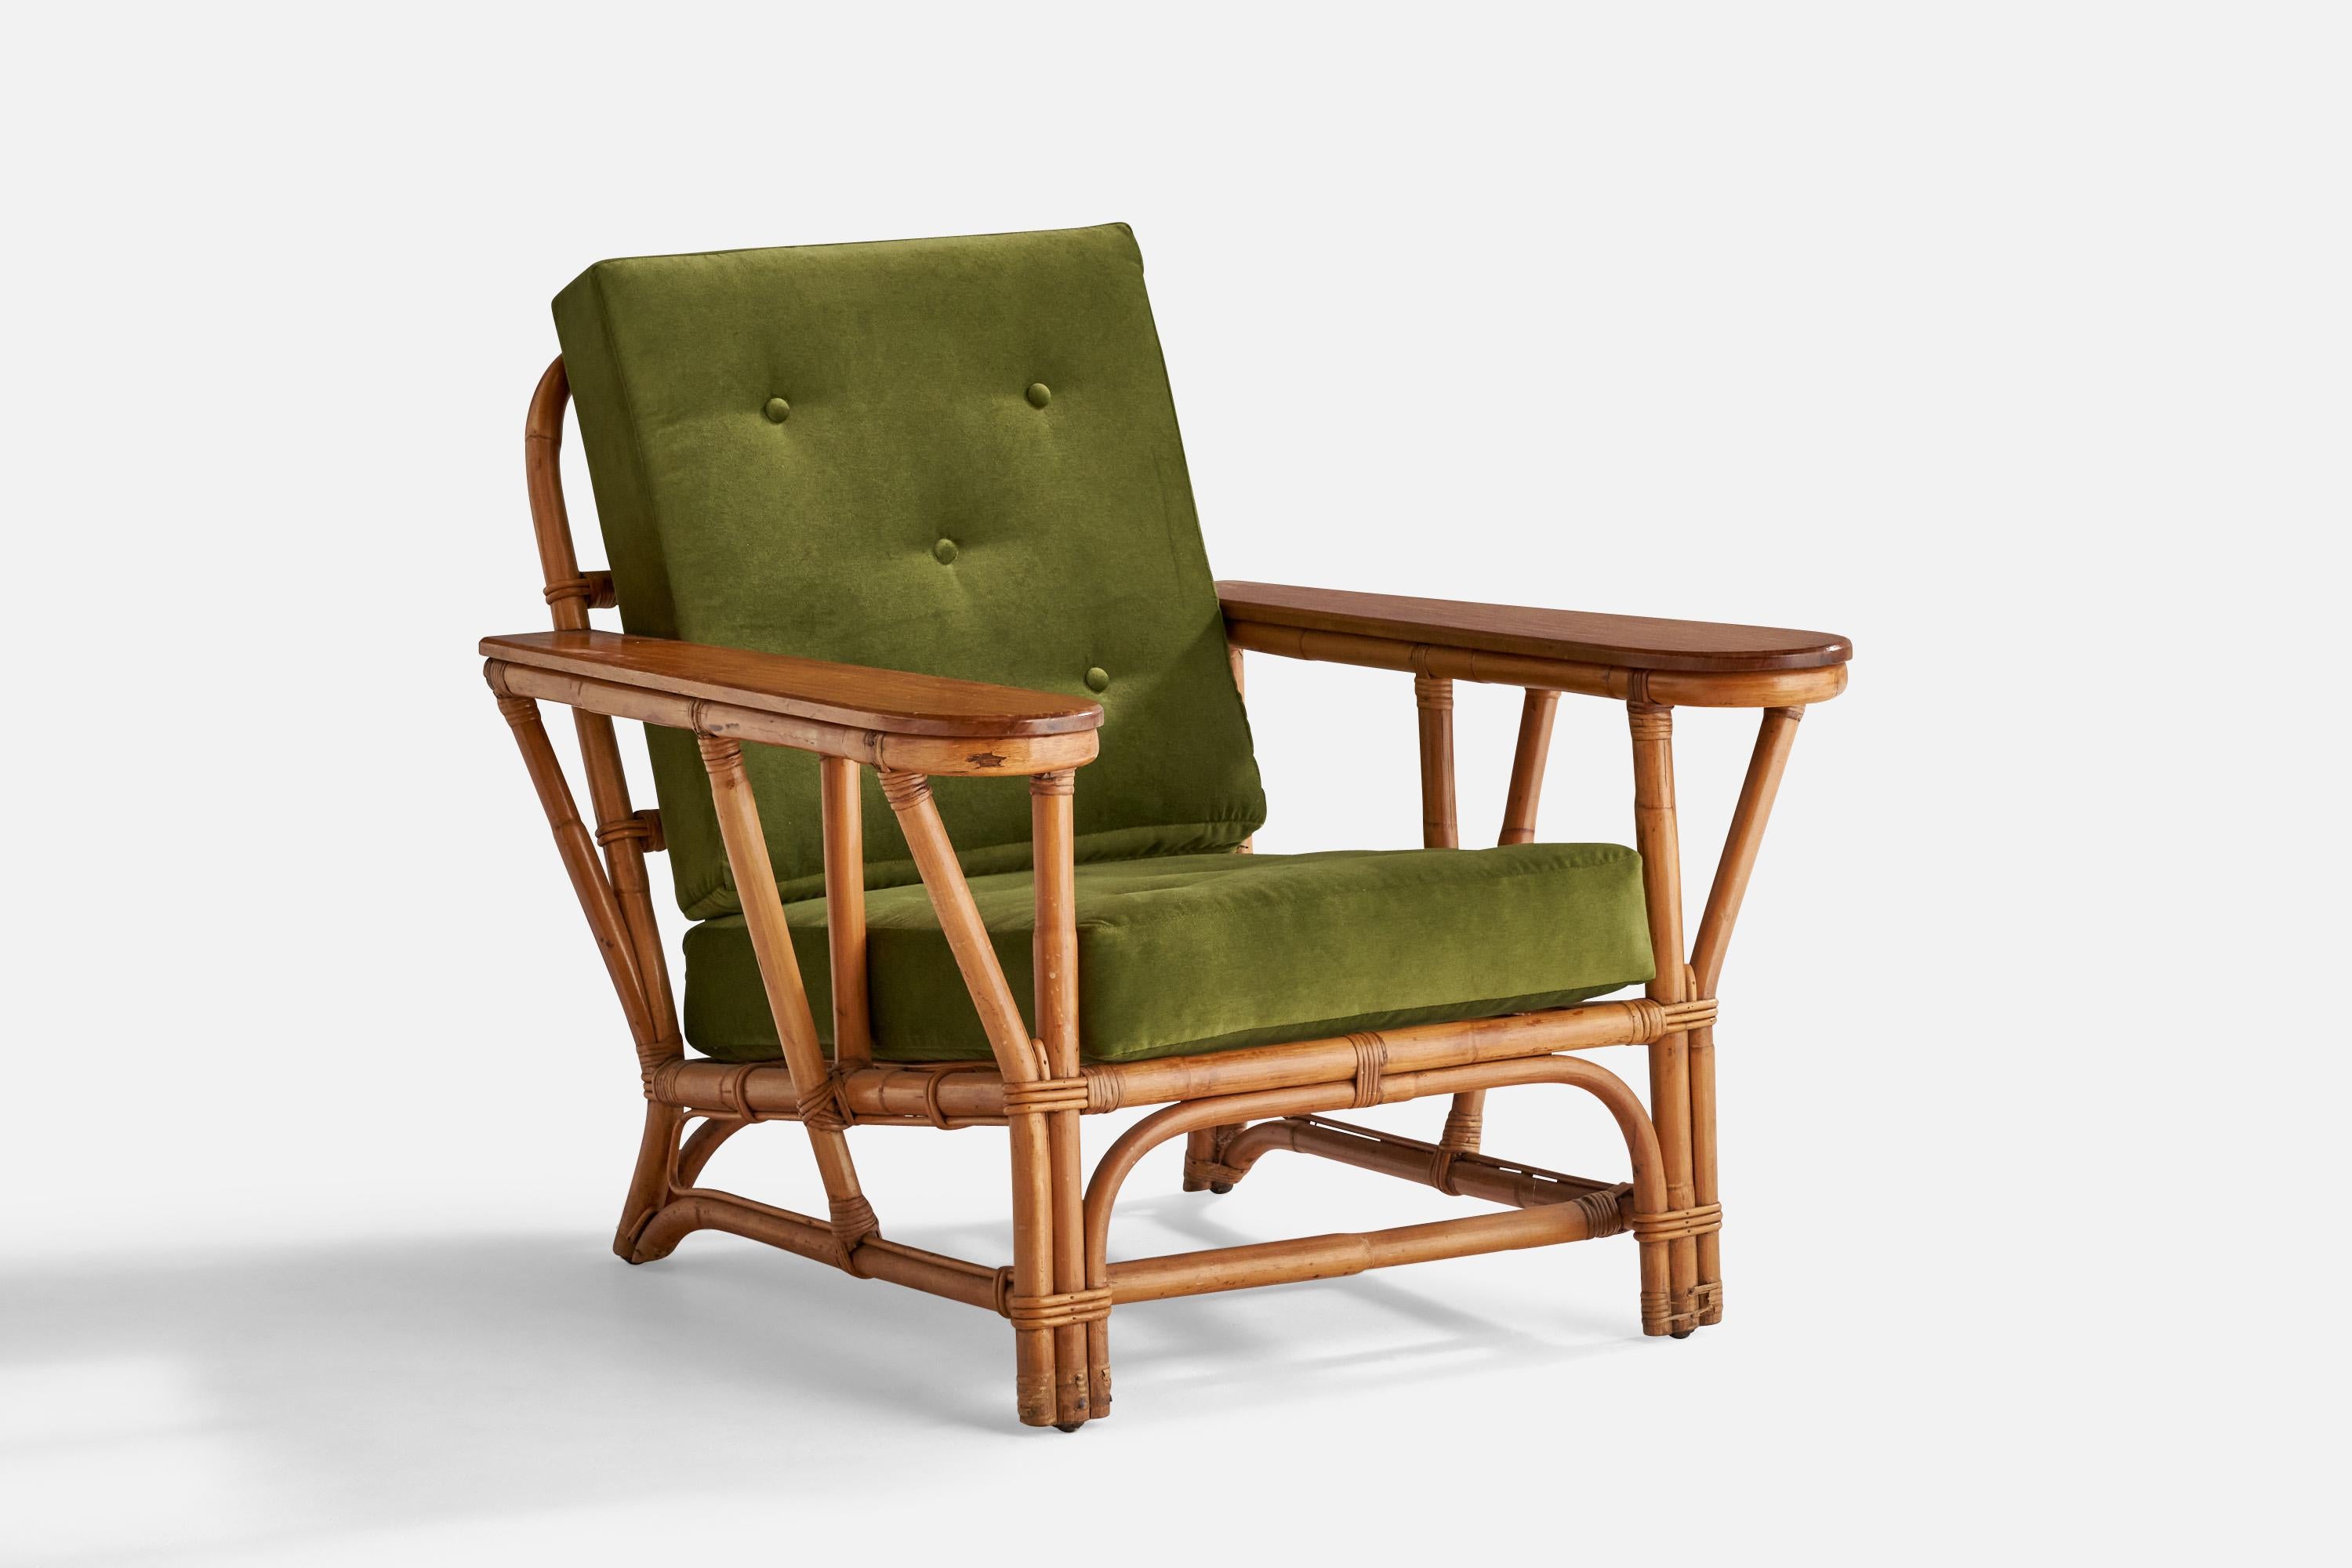 Chaise longue en velours vert, érable, bambou et rotin, conçue et produite aux États-Unis dans les années 1950.

Hauteur d'assise : 16,5
